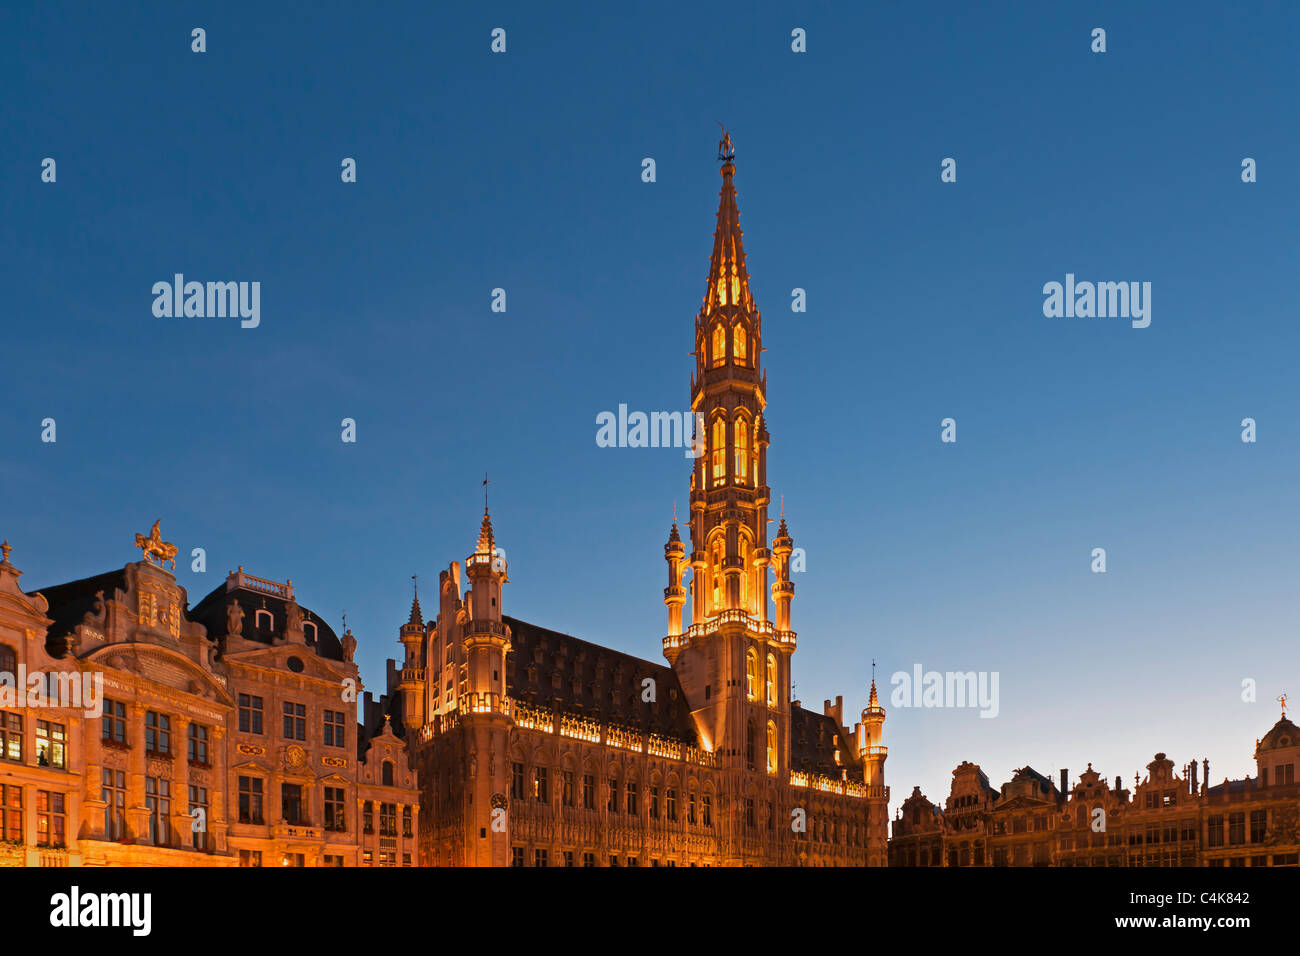 Seit 1402 gebauten Guildhall im gotischen Stil mit 91 Meter hohen Turm, auf dem Marktplatz, Grand Place, Brüssel, Belgien, Europa Stockfoto